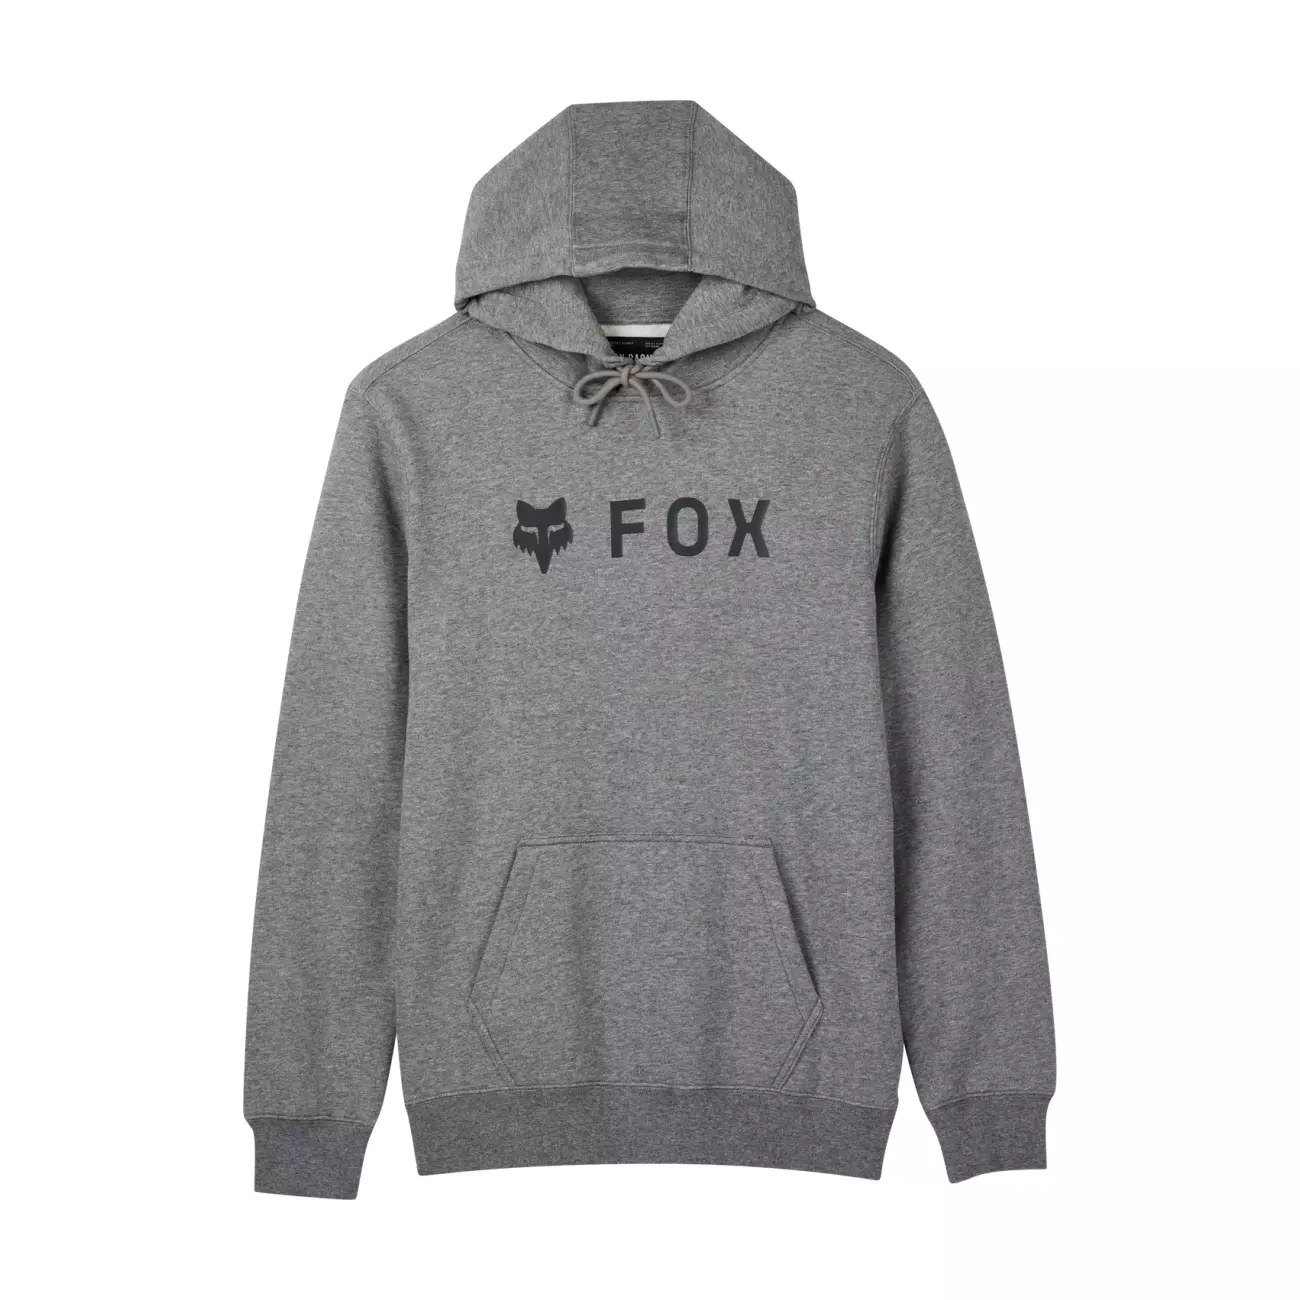 FOX mikina - ABSOLUTE FLEECE - šedá XL